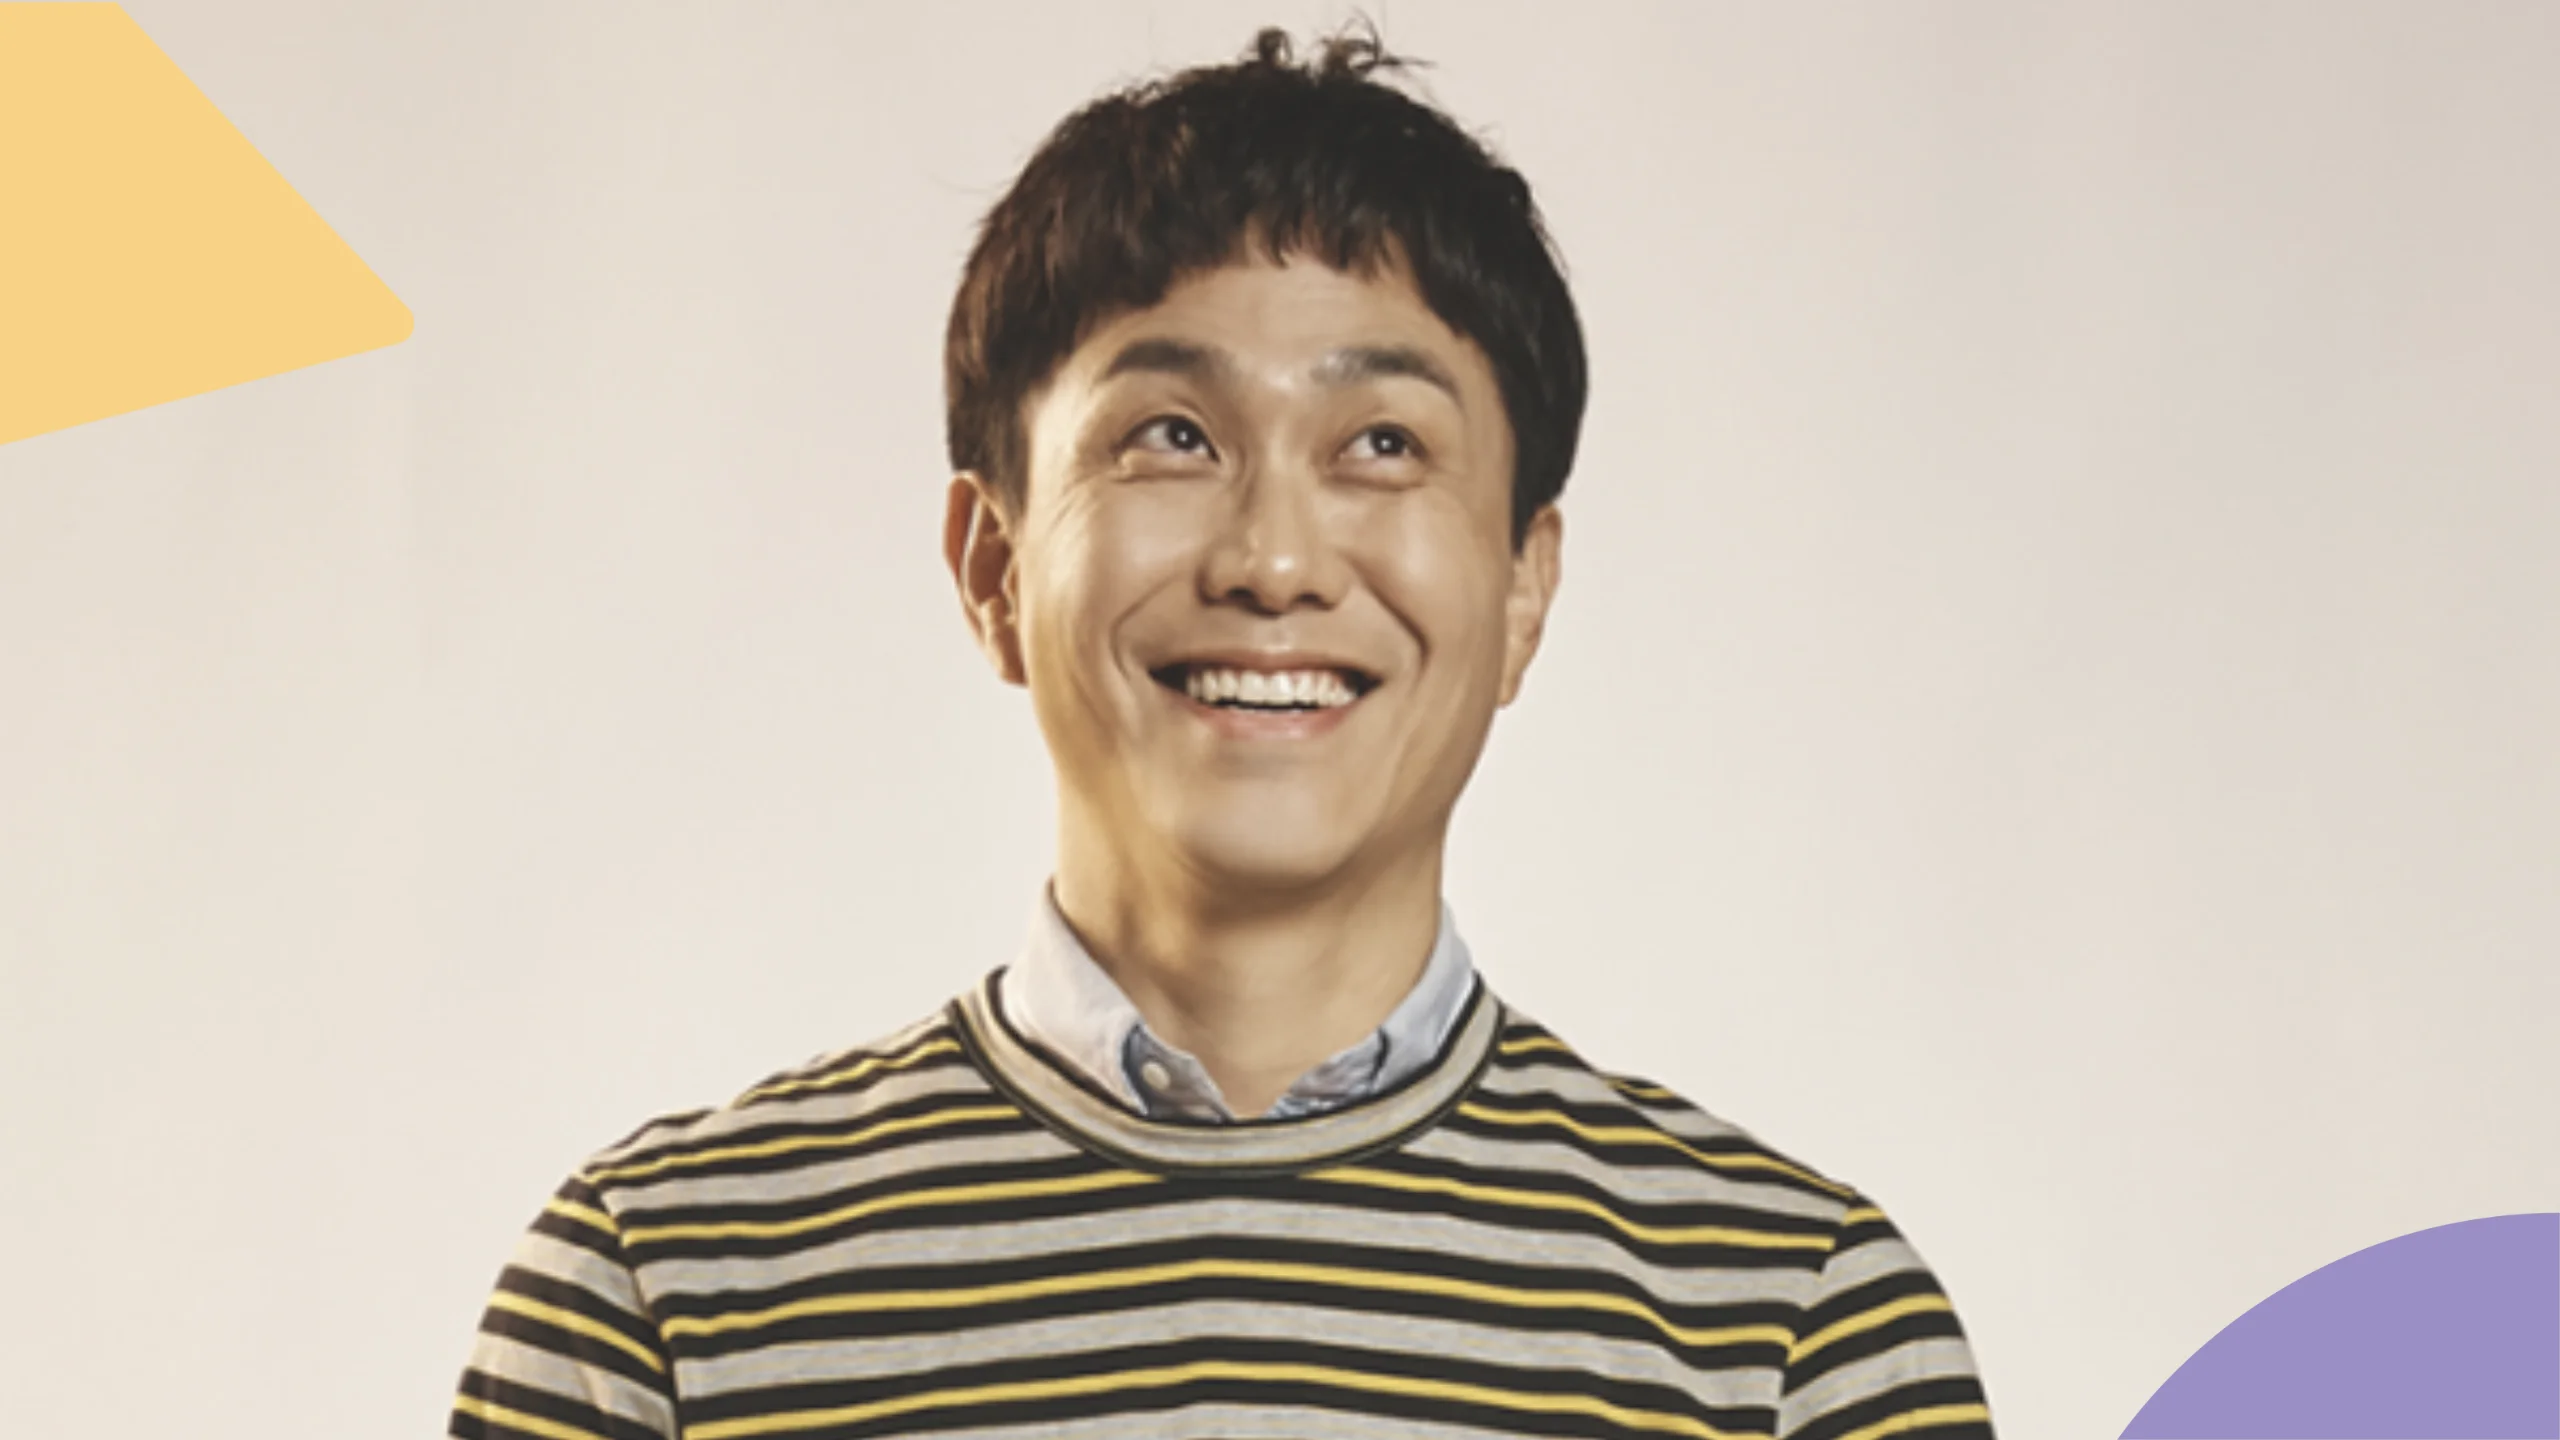 Séries coreanas sobre autismo: confira 3 indicações geniais